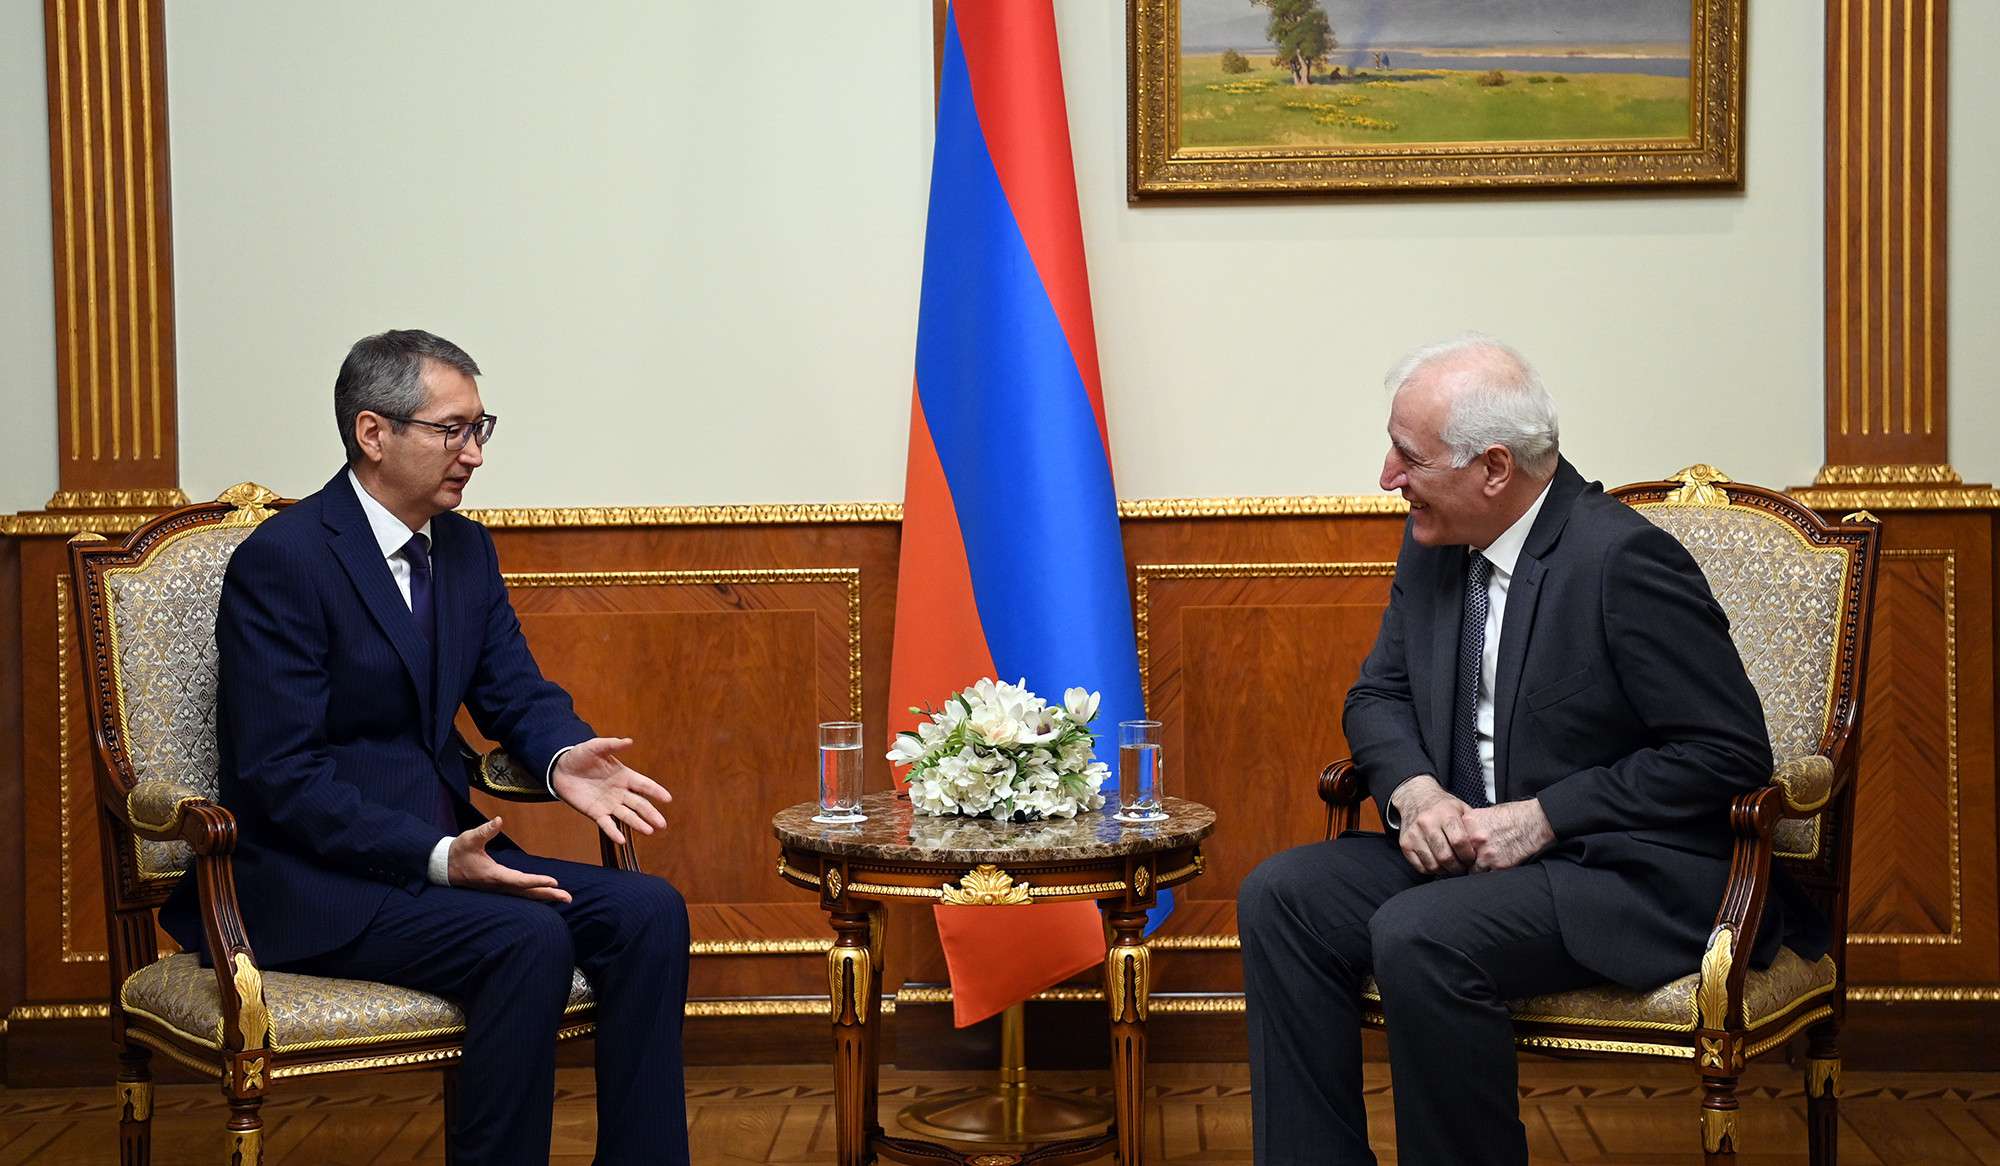 Ermenistan ve Kazakistan ortak projeleri hayata geçiriyor